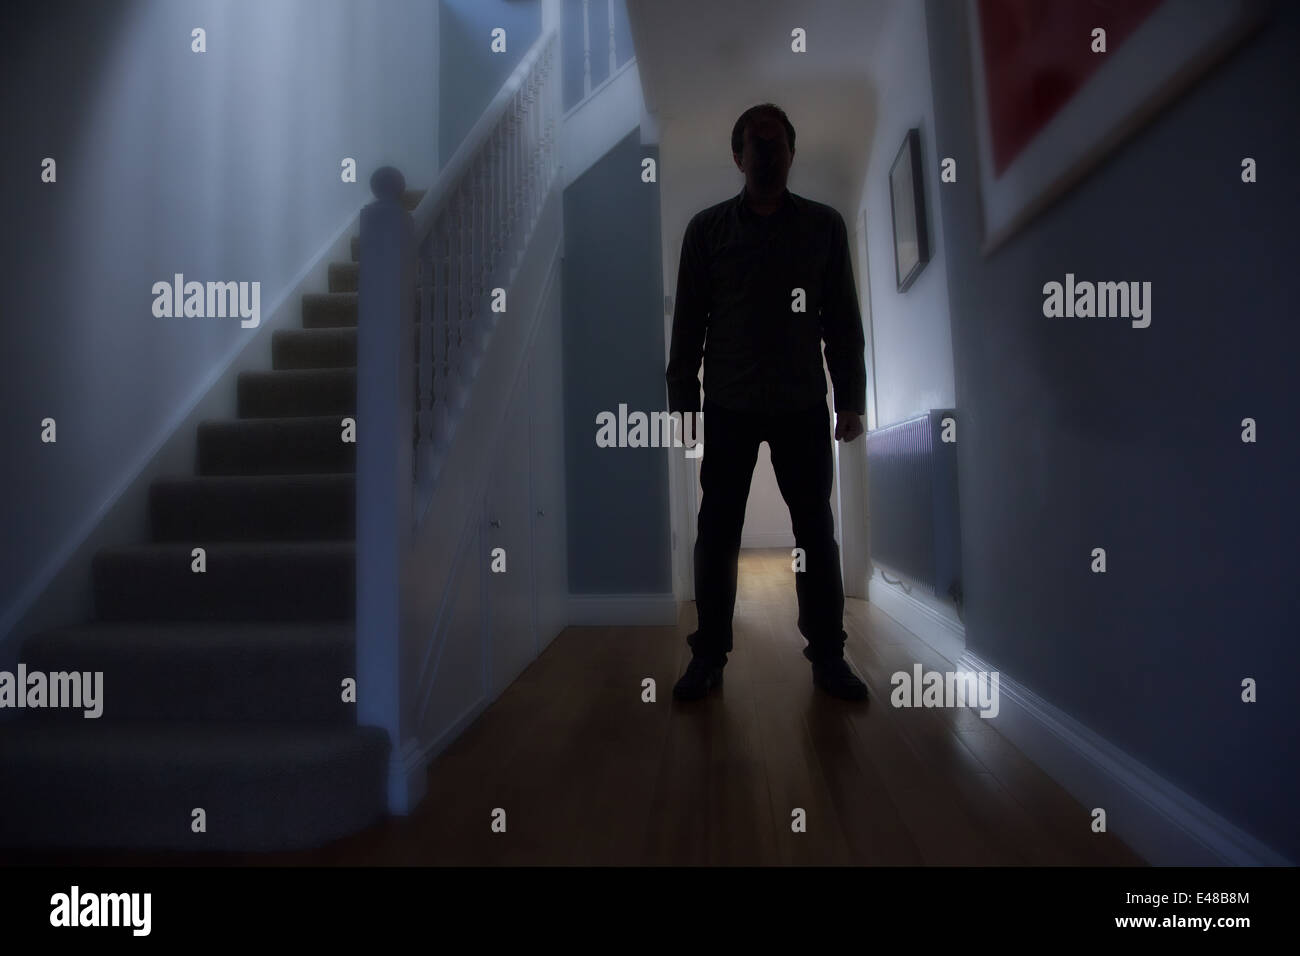 Silhouette d'un homme debout, dans un couloir d'une maison avec les escaliers à sa droite. Banque D'Images